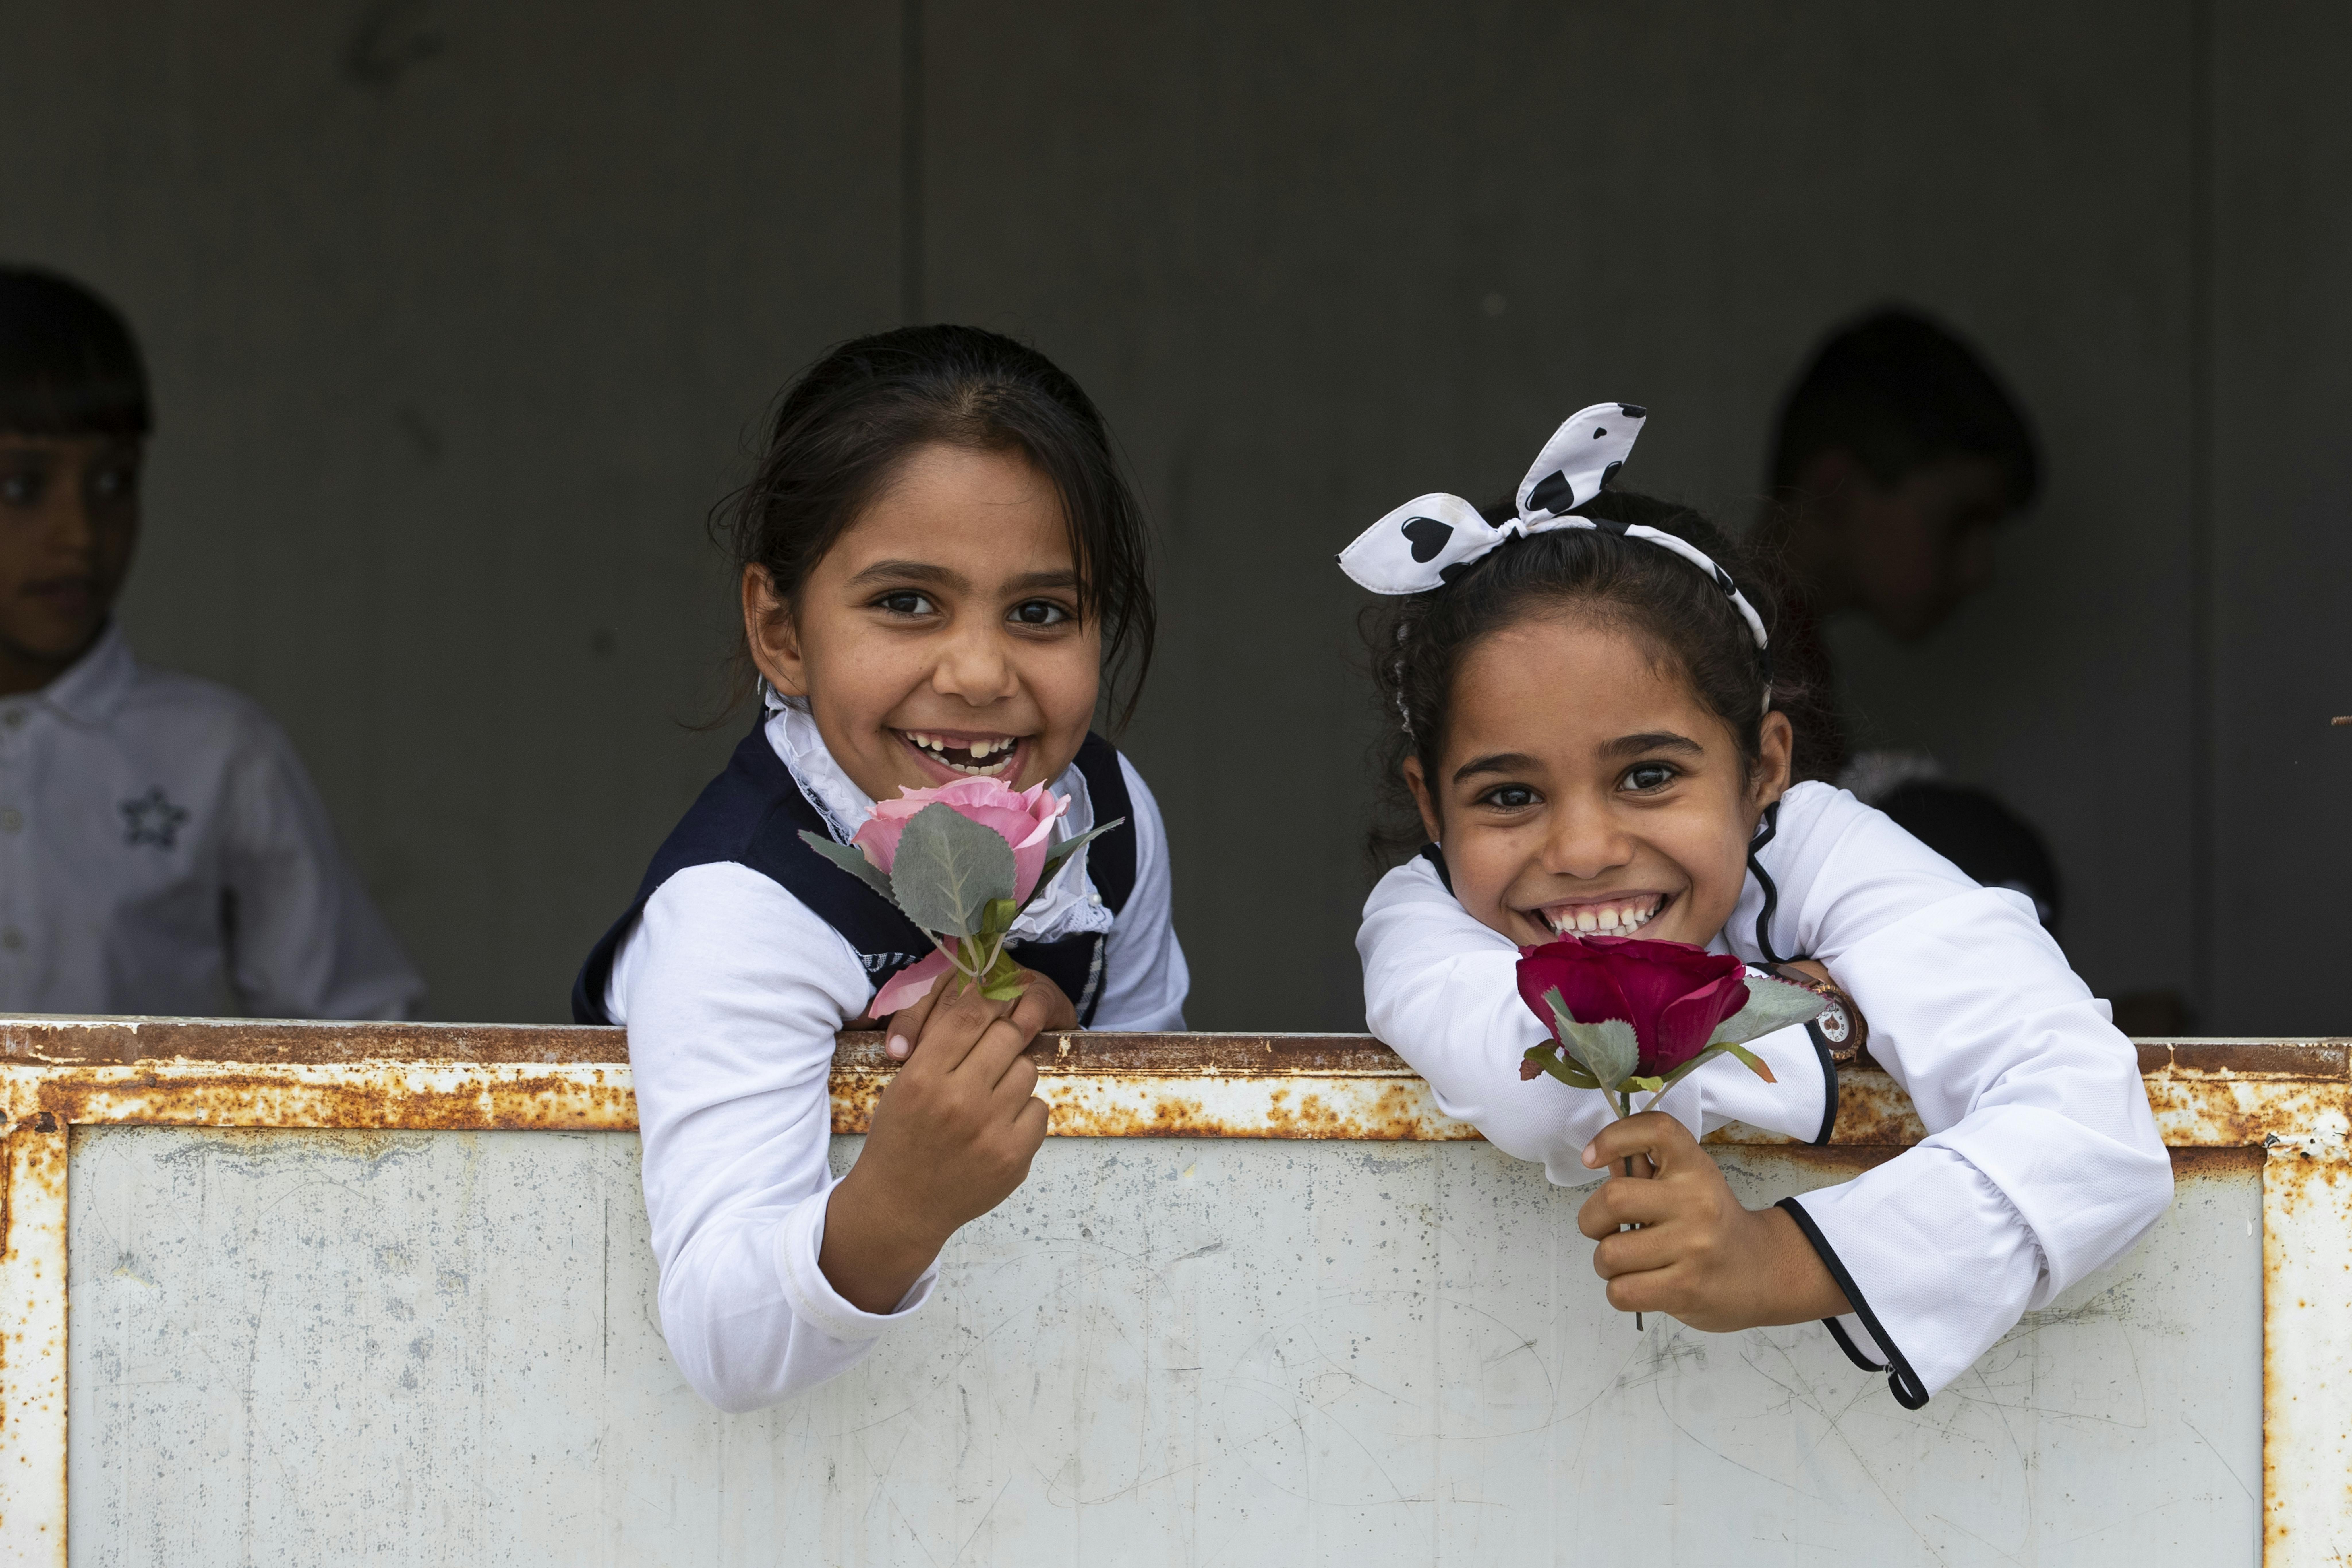 Bambine irachene sorridono, tenendo in mano delle rose